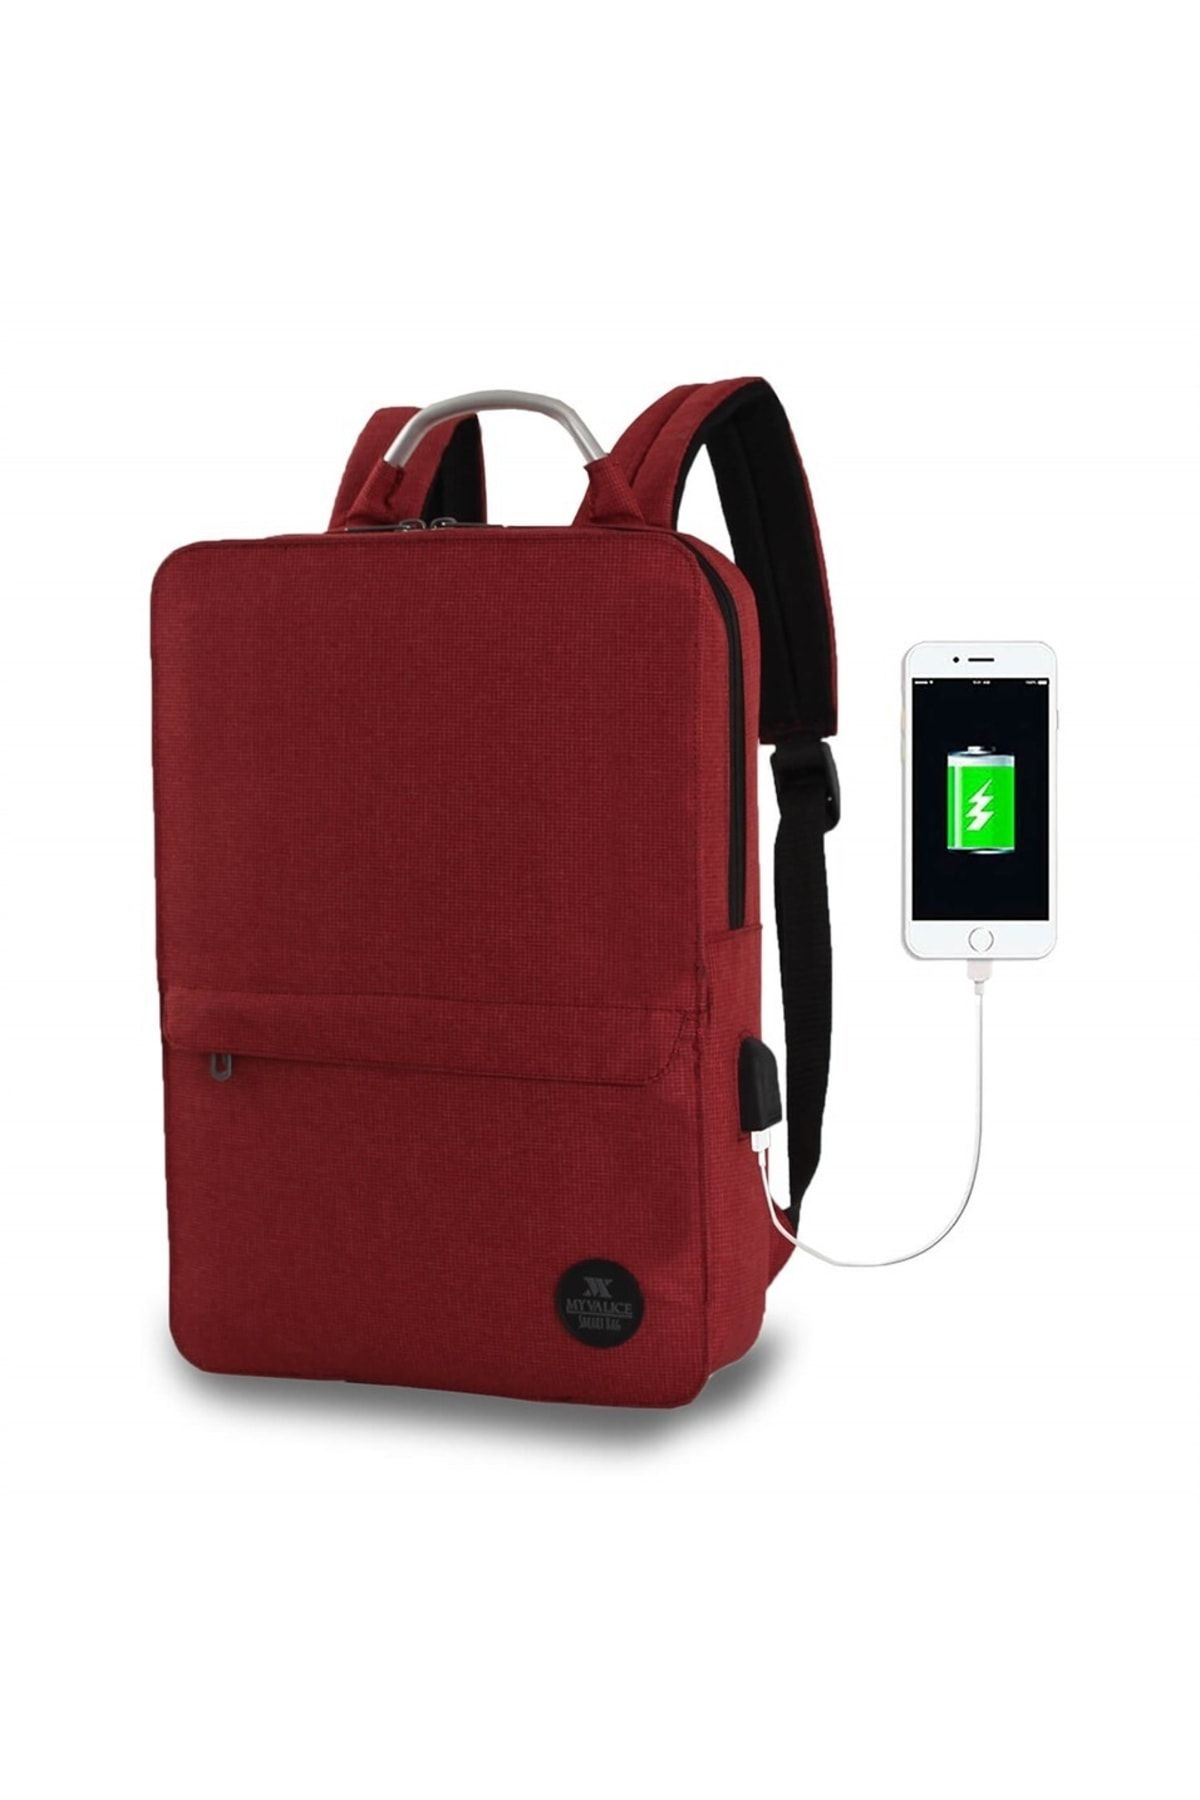 My Valice Smart Bag Usb Şarj Girişli Akıllı Laptop Sırt Çantası 1210 Bordo